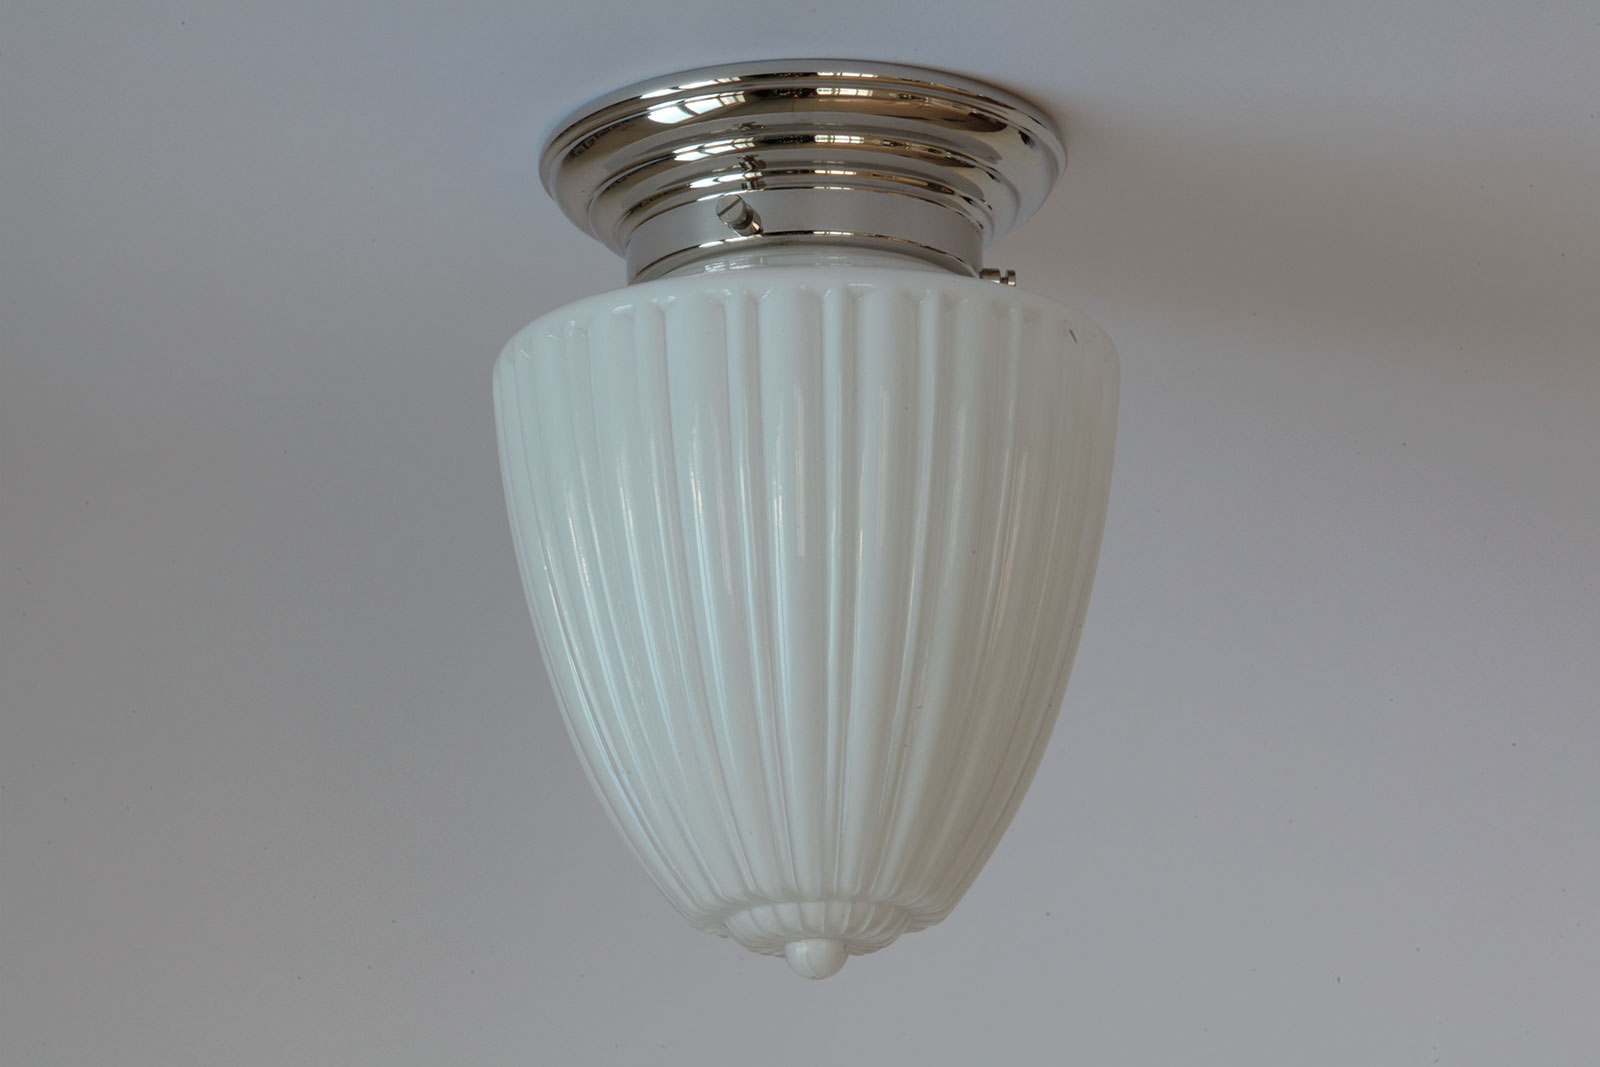 Klassische, kleinere Deckenleuchte mit kanneliertem Opalglas Ø 17 cm: Hier mit Sockel in Messing glänzend vernickelt